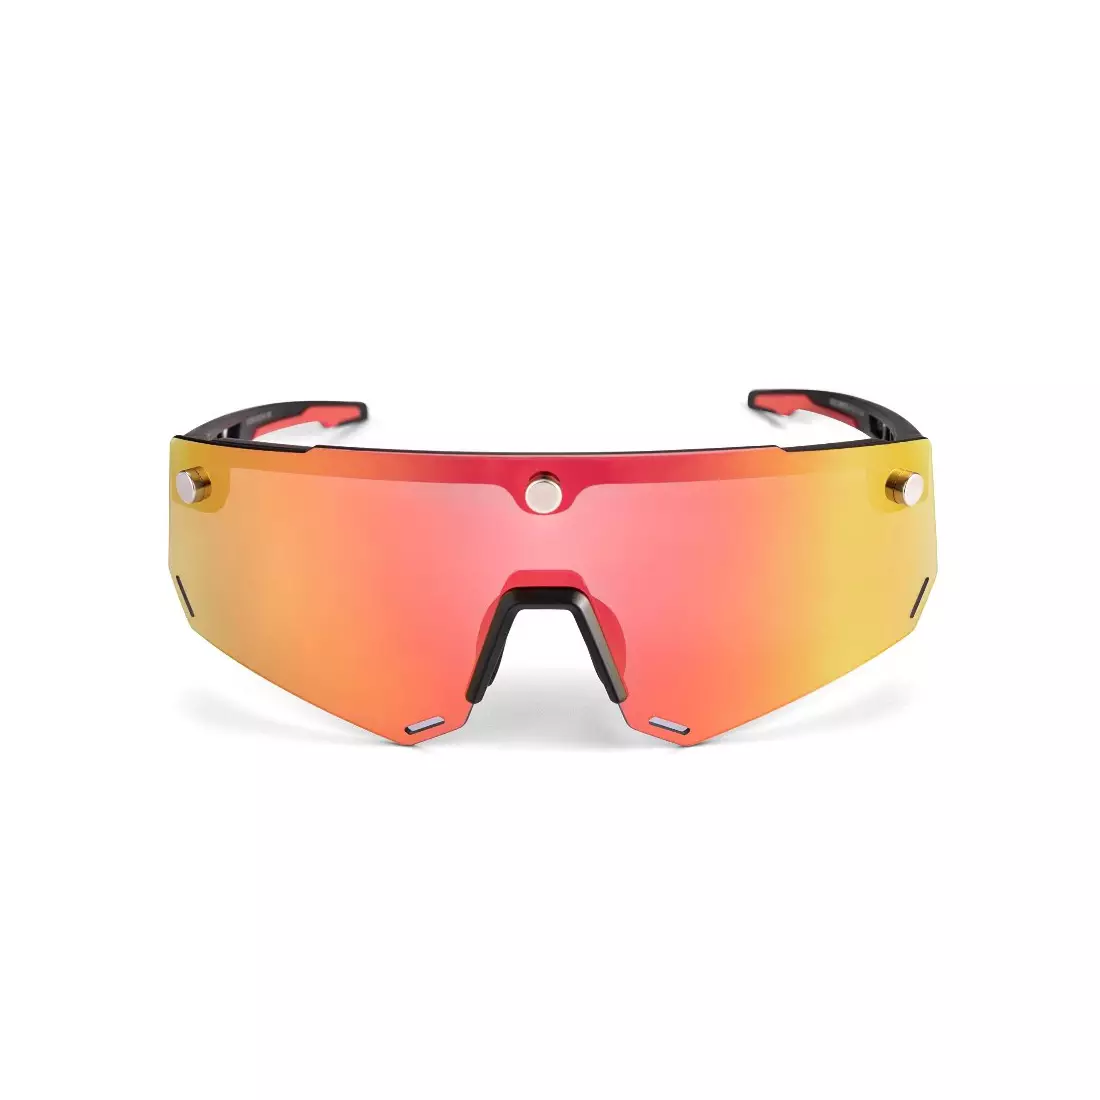 Rockbros SP213BK Fahrrad / Sportbrille mit polarisiertem schwarz